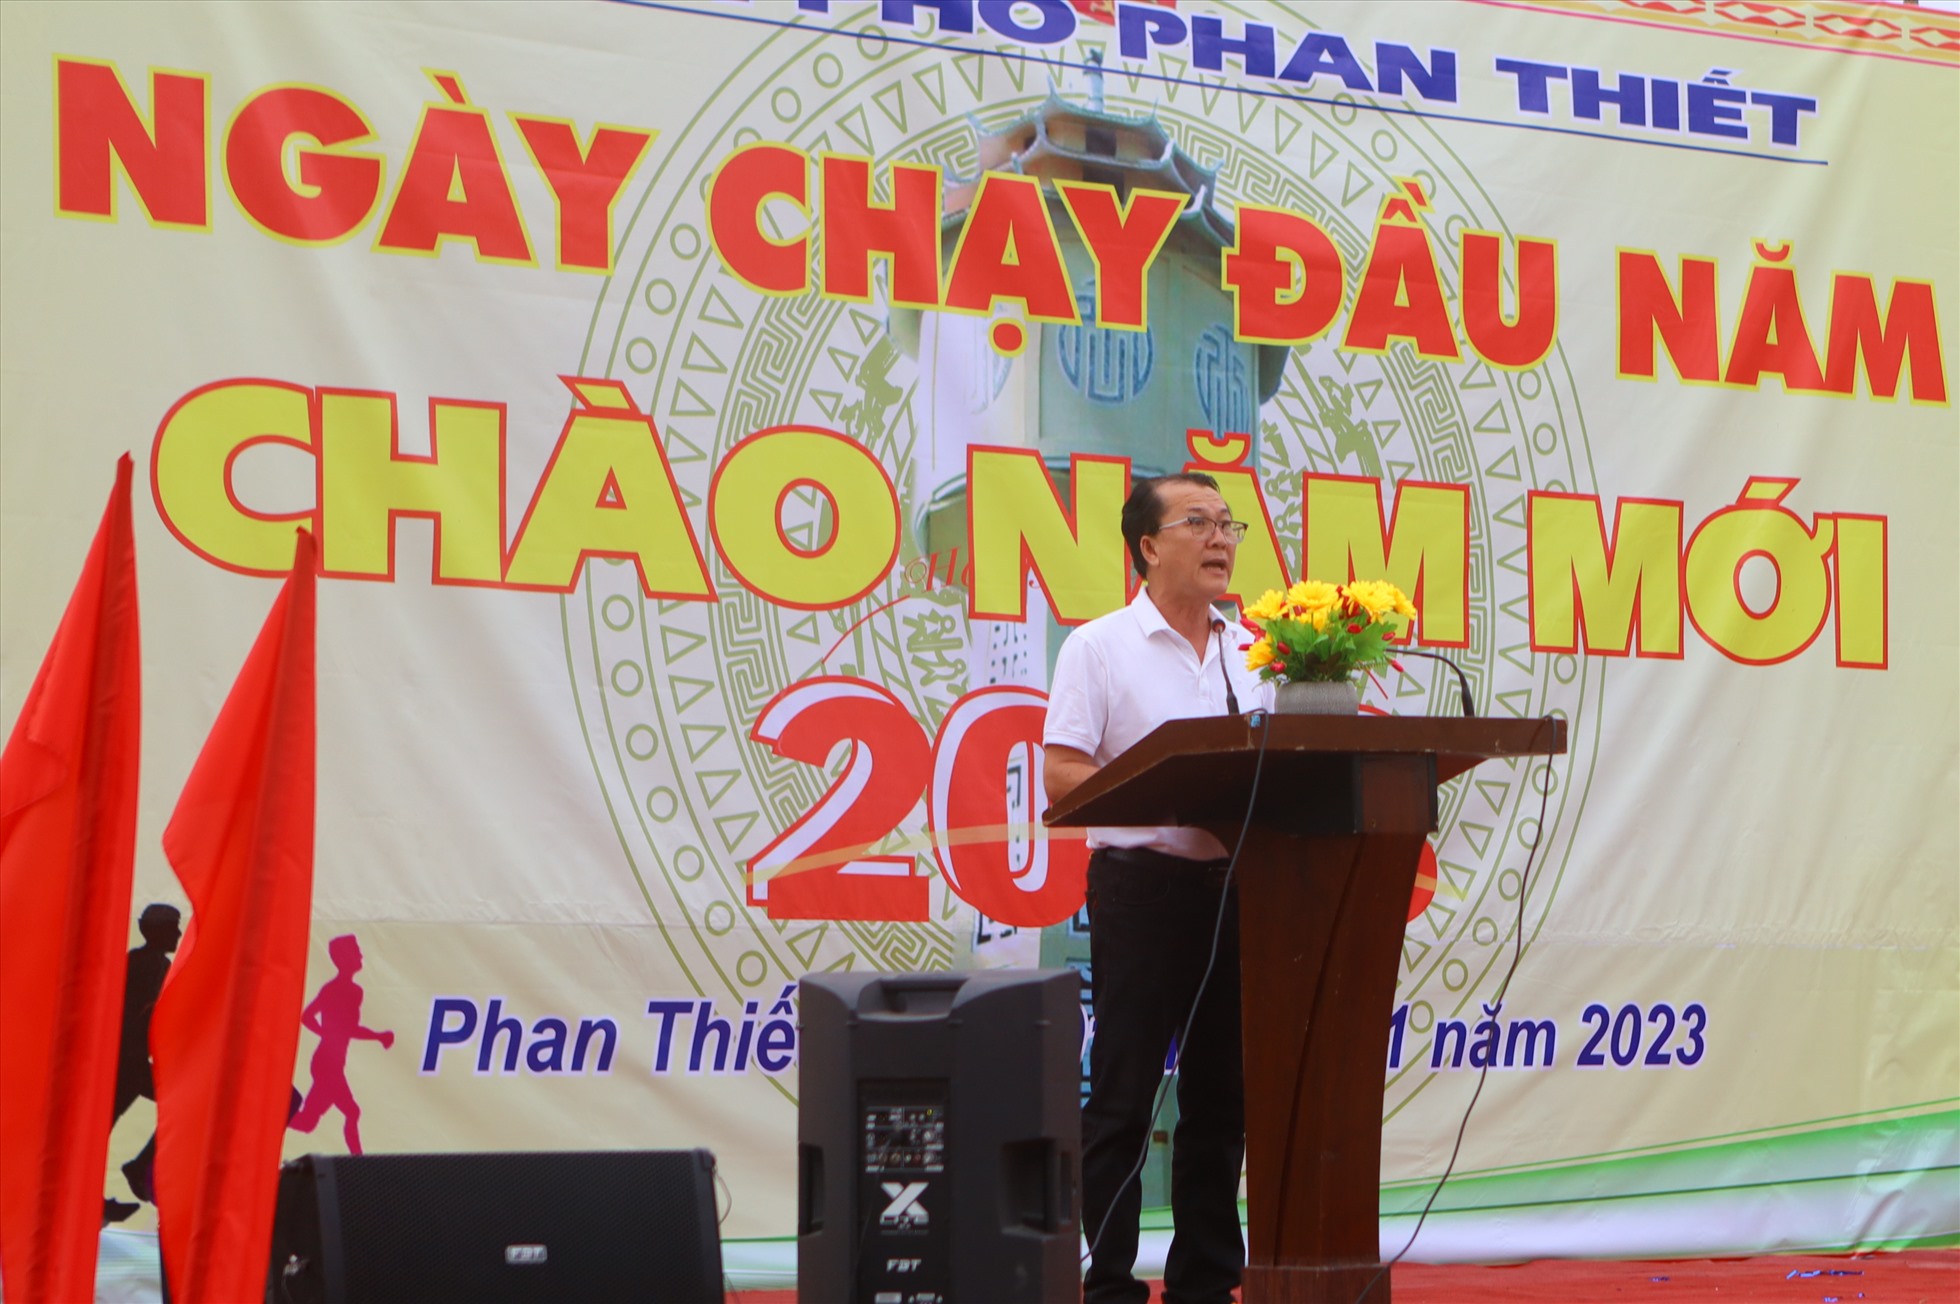 Ông Nguyễn Nam Long, Phó chủ tịch UBND TP.Phan Thiết tuyên bố xuất phát. Ảnh: Duy Tuấn